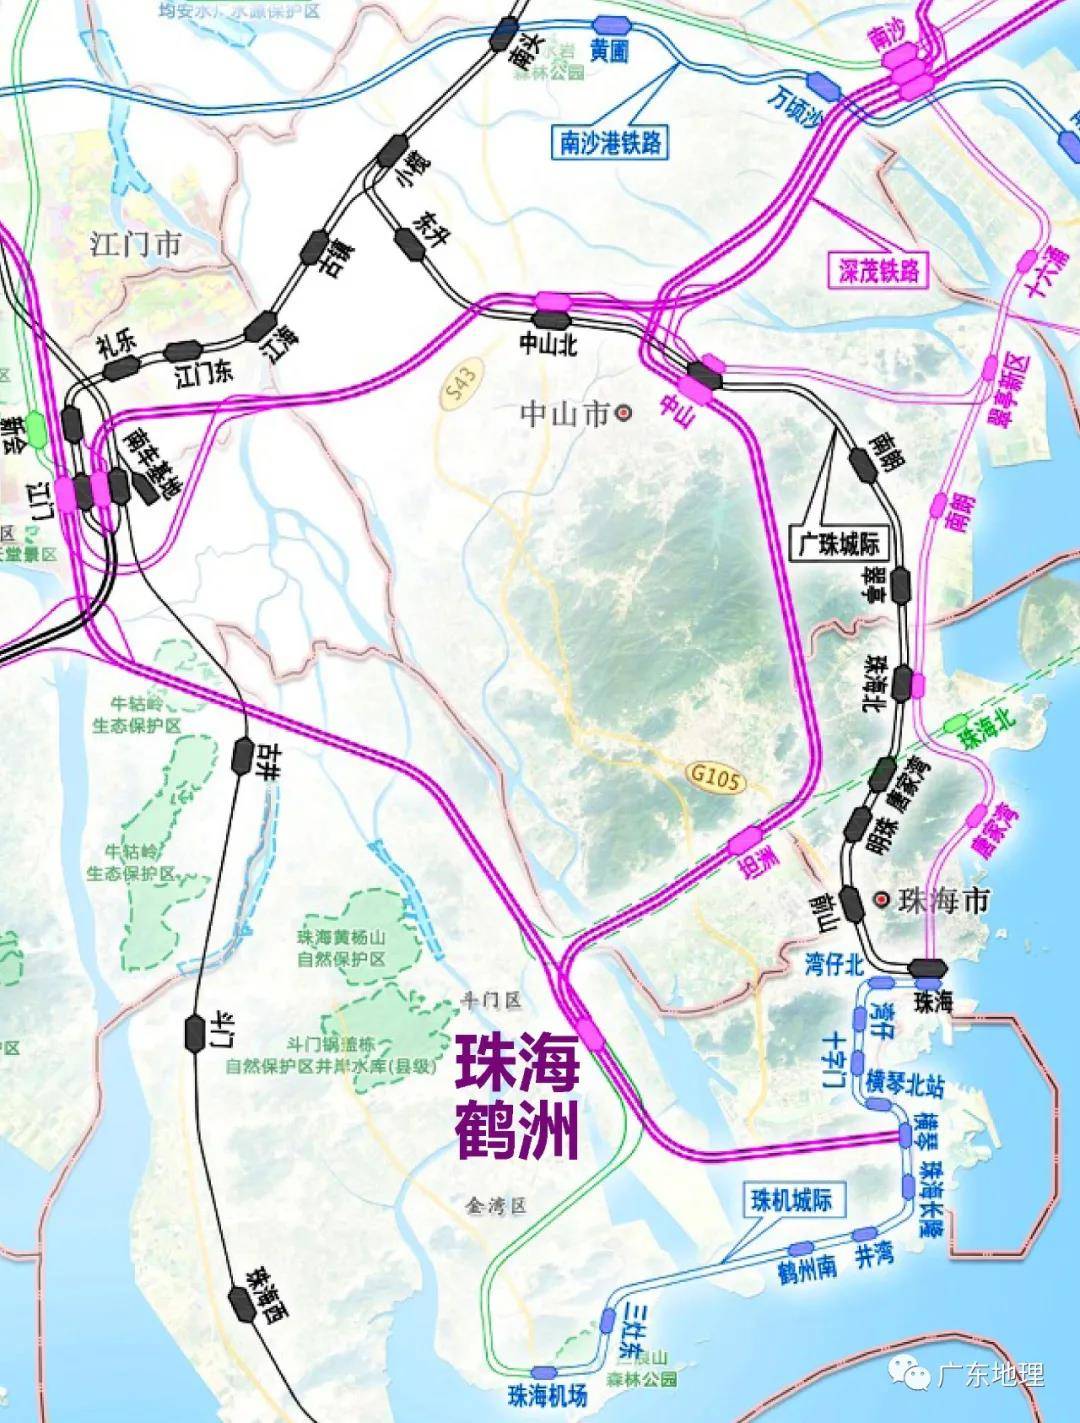 该线在南沙站可换乘深茂铁路进入深圳,在庆盛站换乘广深港高铁,在黄埔